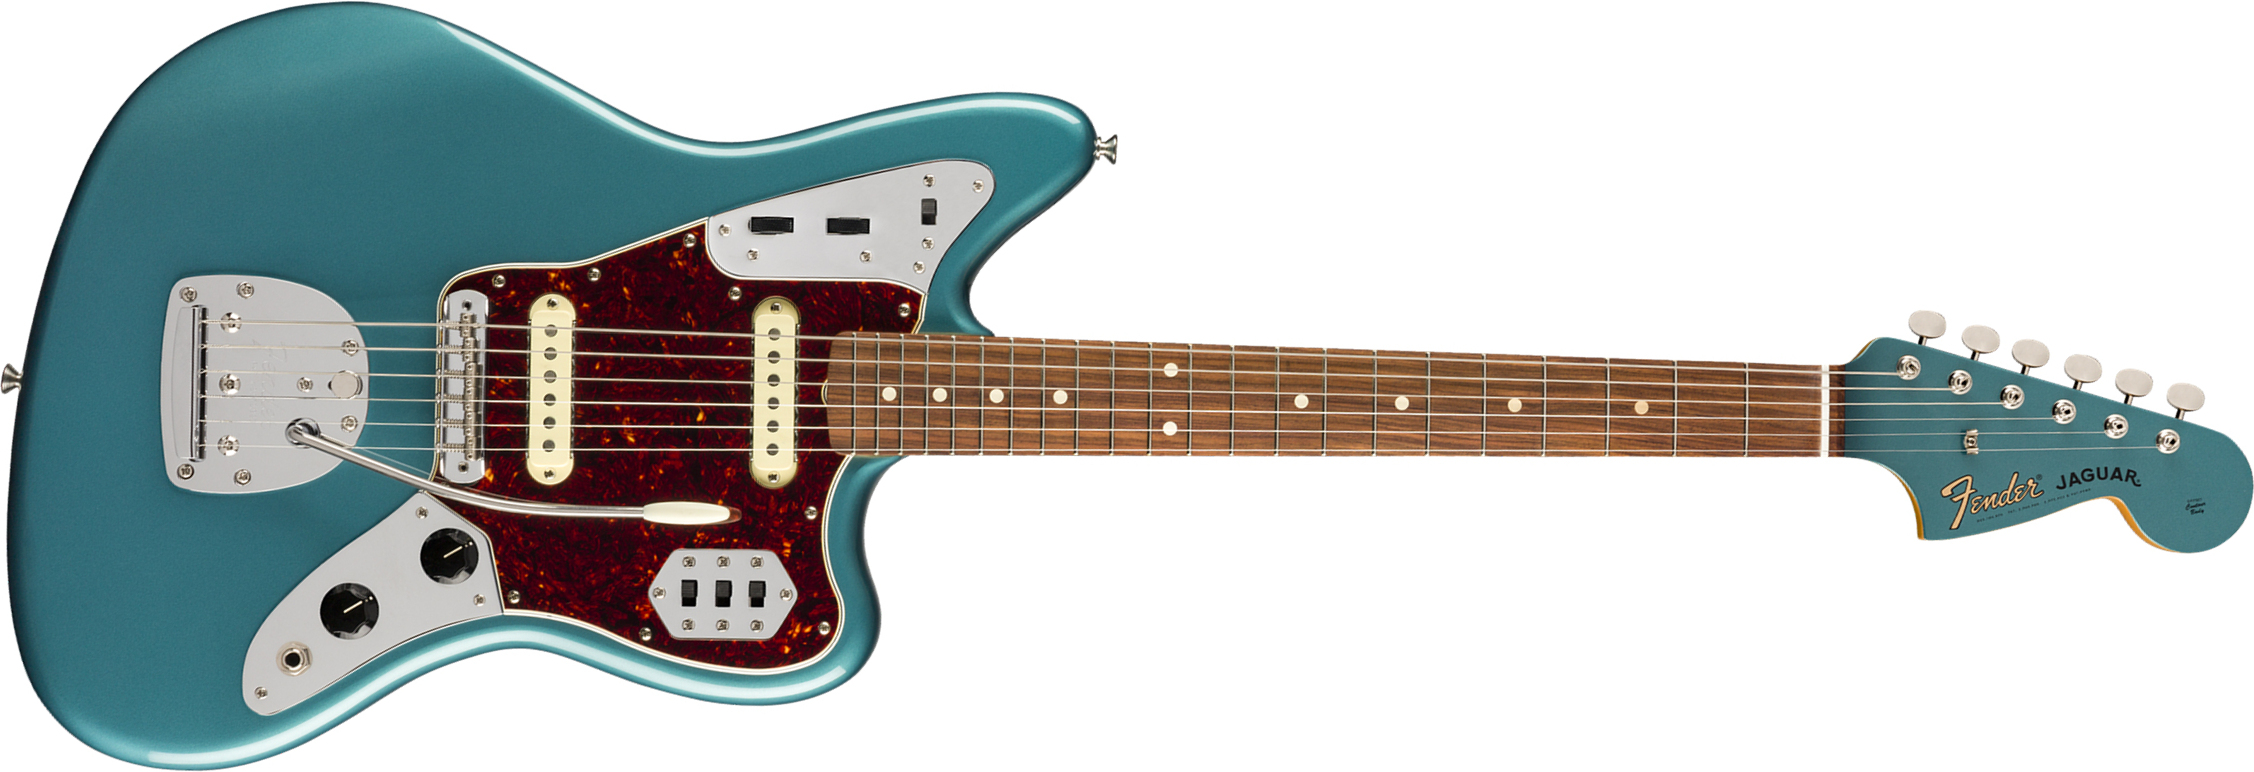 Fender Jaguar 60s Vintera Vintage Mex Pf - Ocean Turquoise - Retro rock electric guitar - Main picture